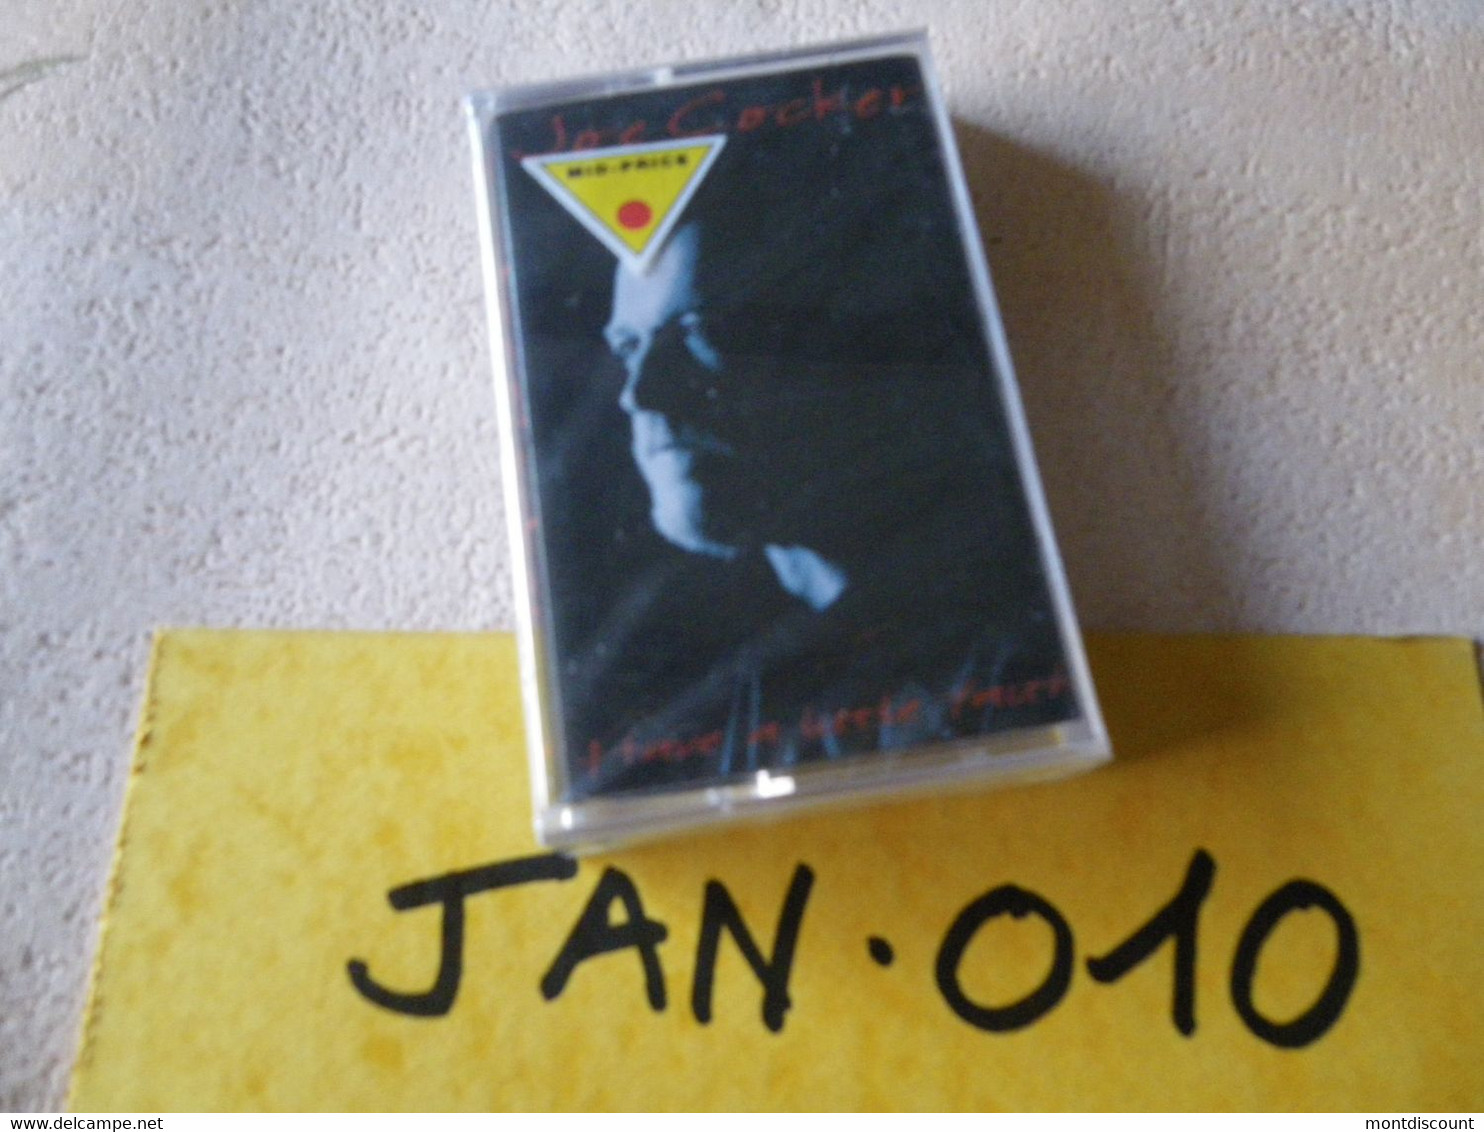 JOE COCKER K7 AUDIO EMBALLE D'ORIGINE JAMAIS SERVIE... VOIR PHOTO... (JAN 010) - Cassettes Audio